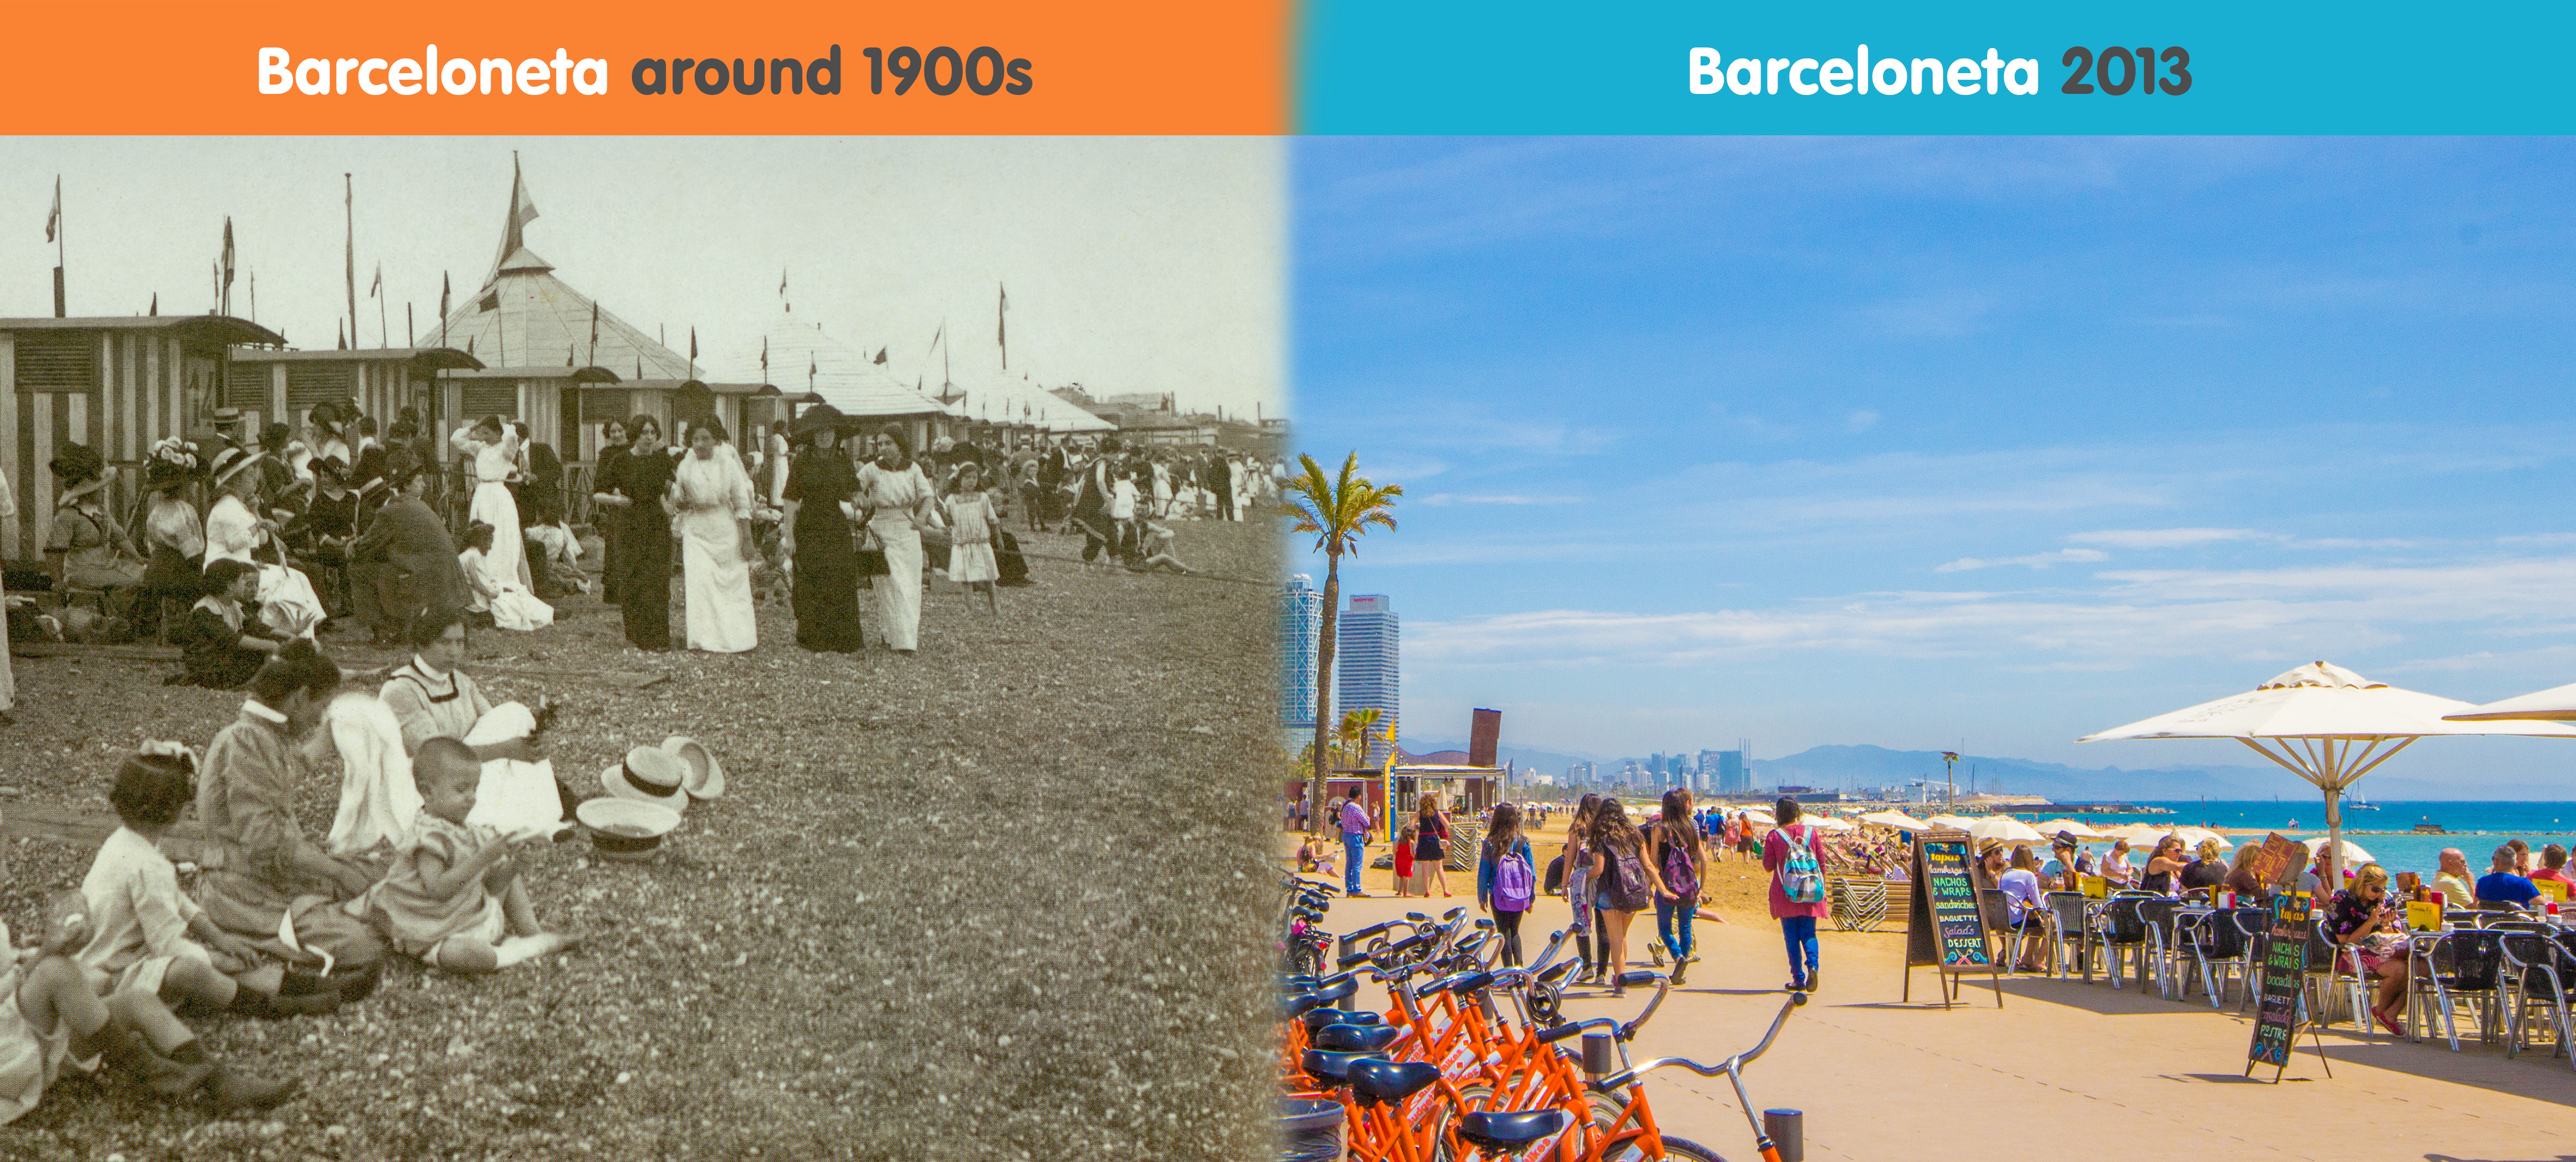 La Barceloneta stranden - Då och nu